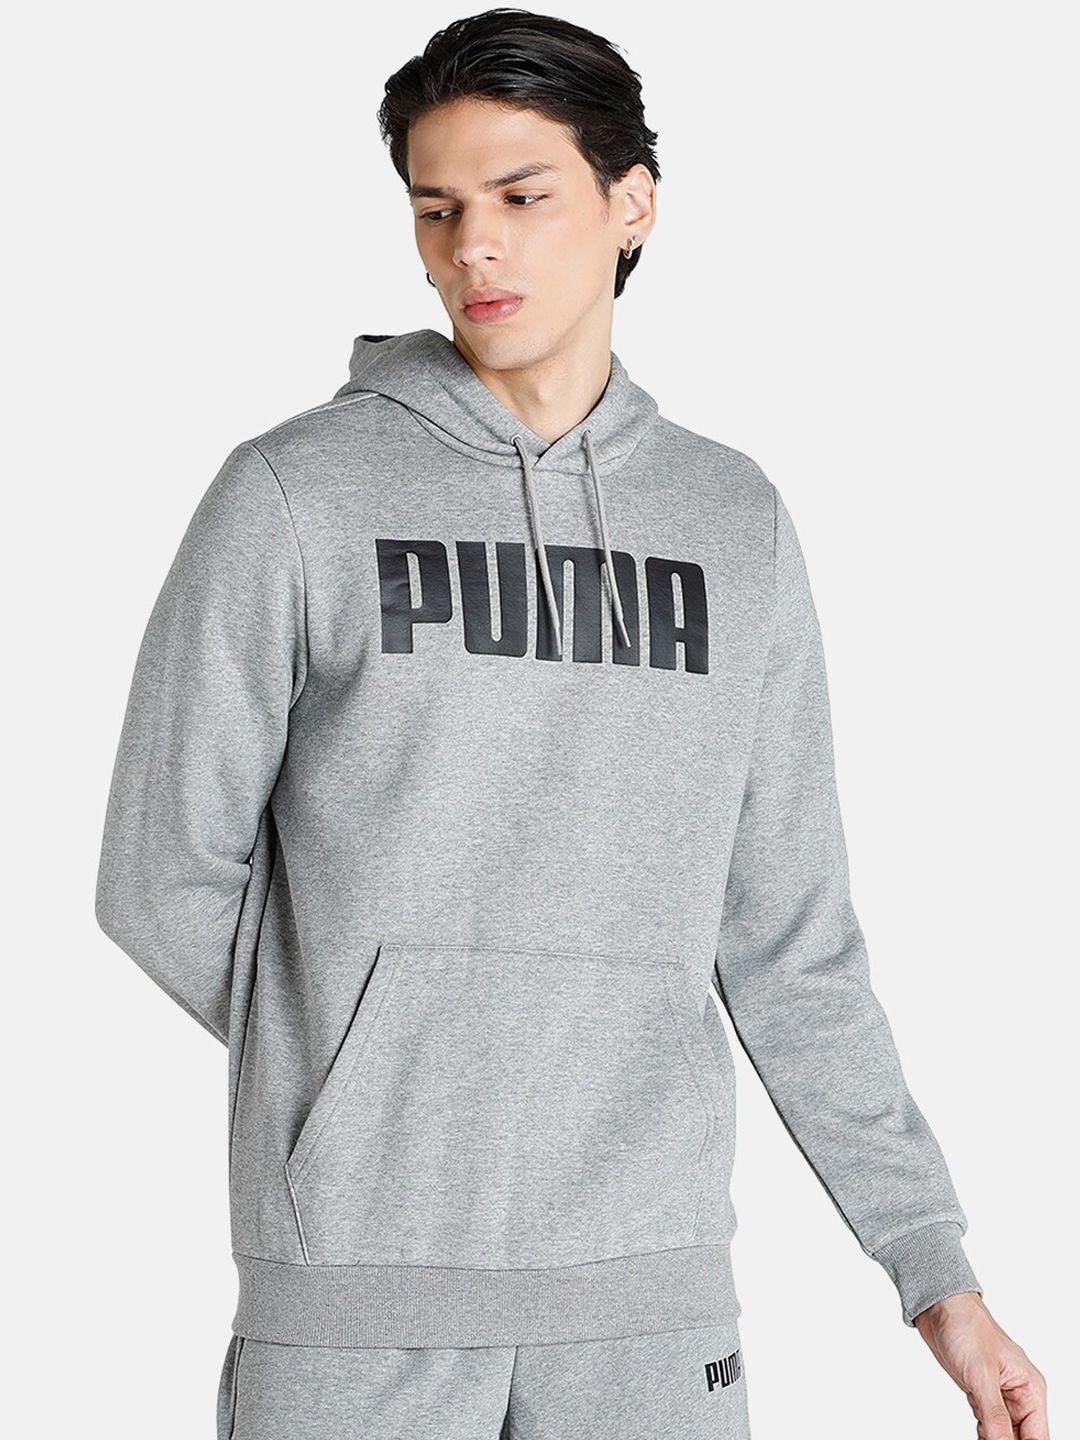 puma-men-grey-printed-hooded-sweatshirt